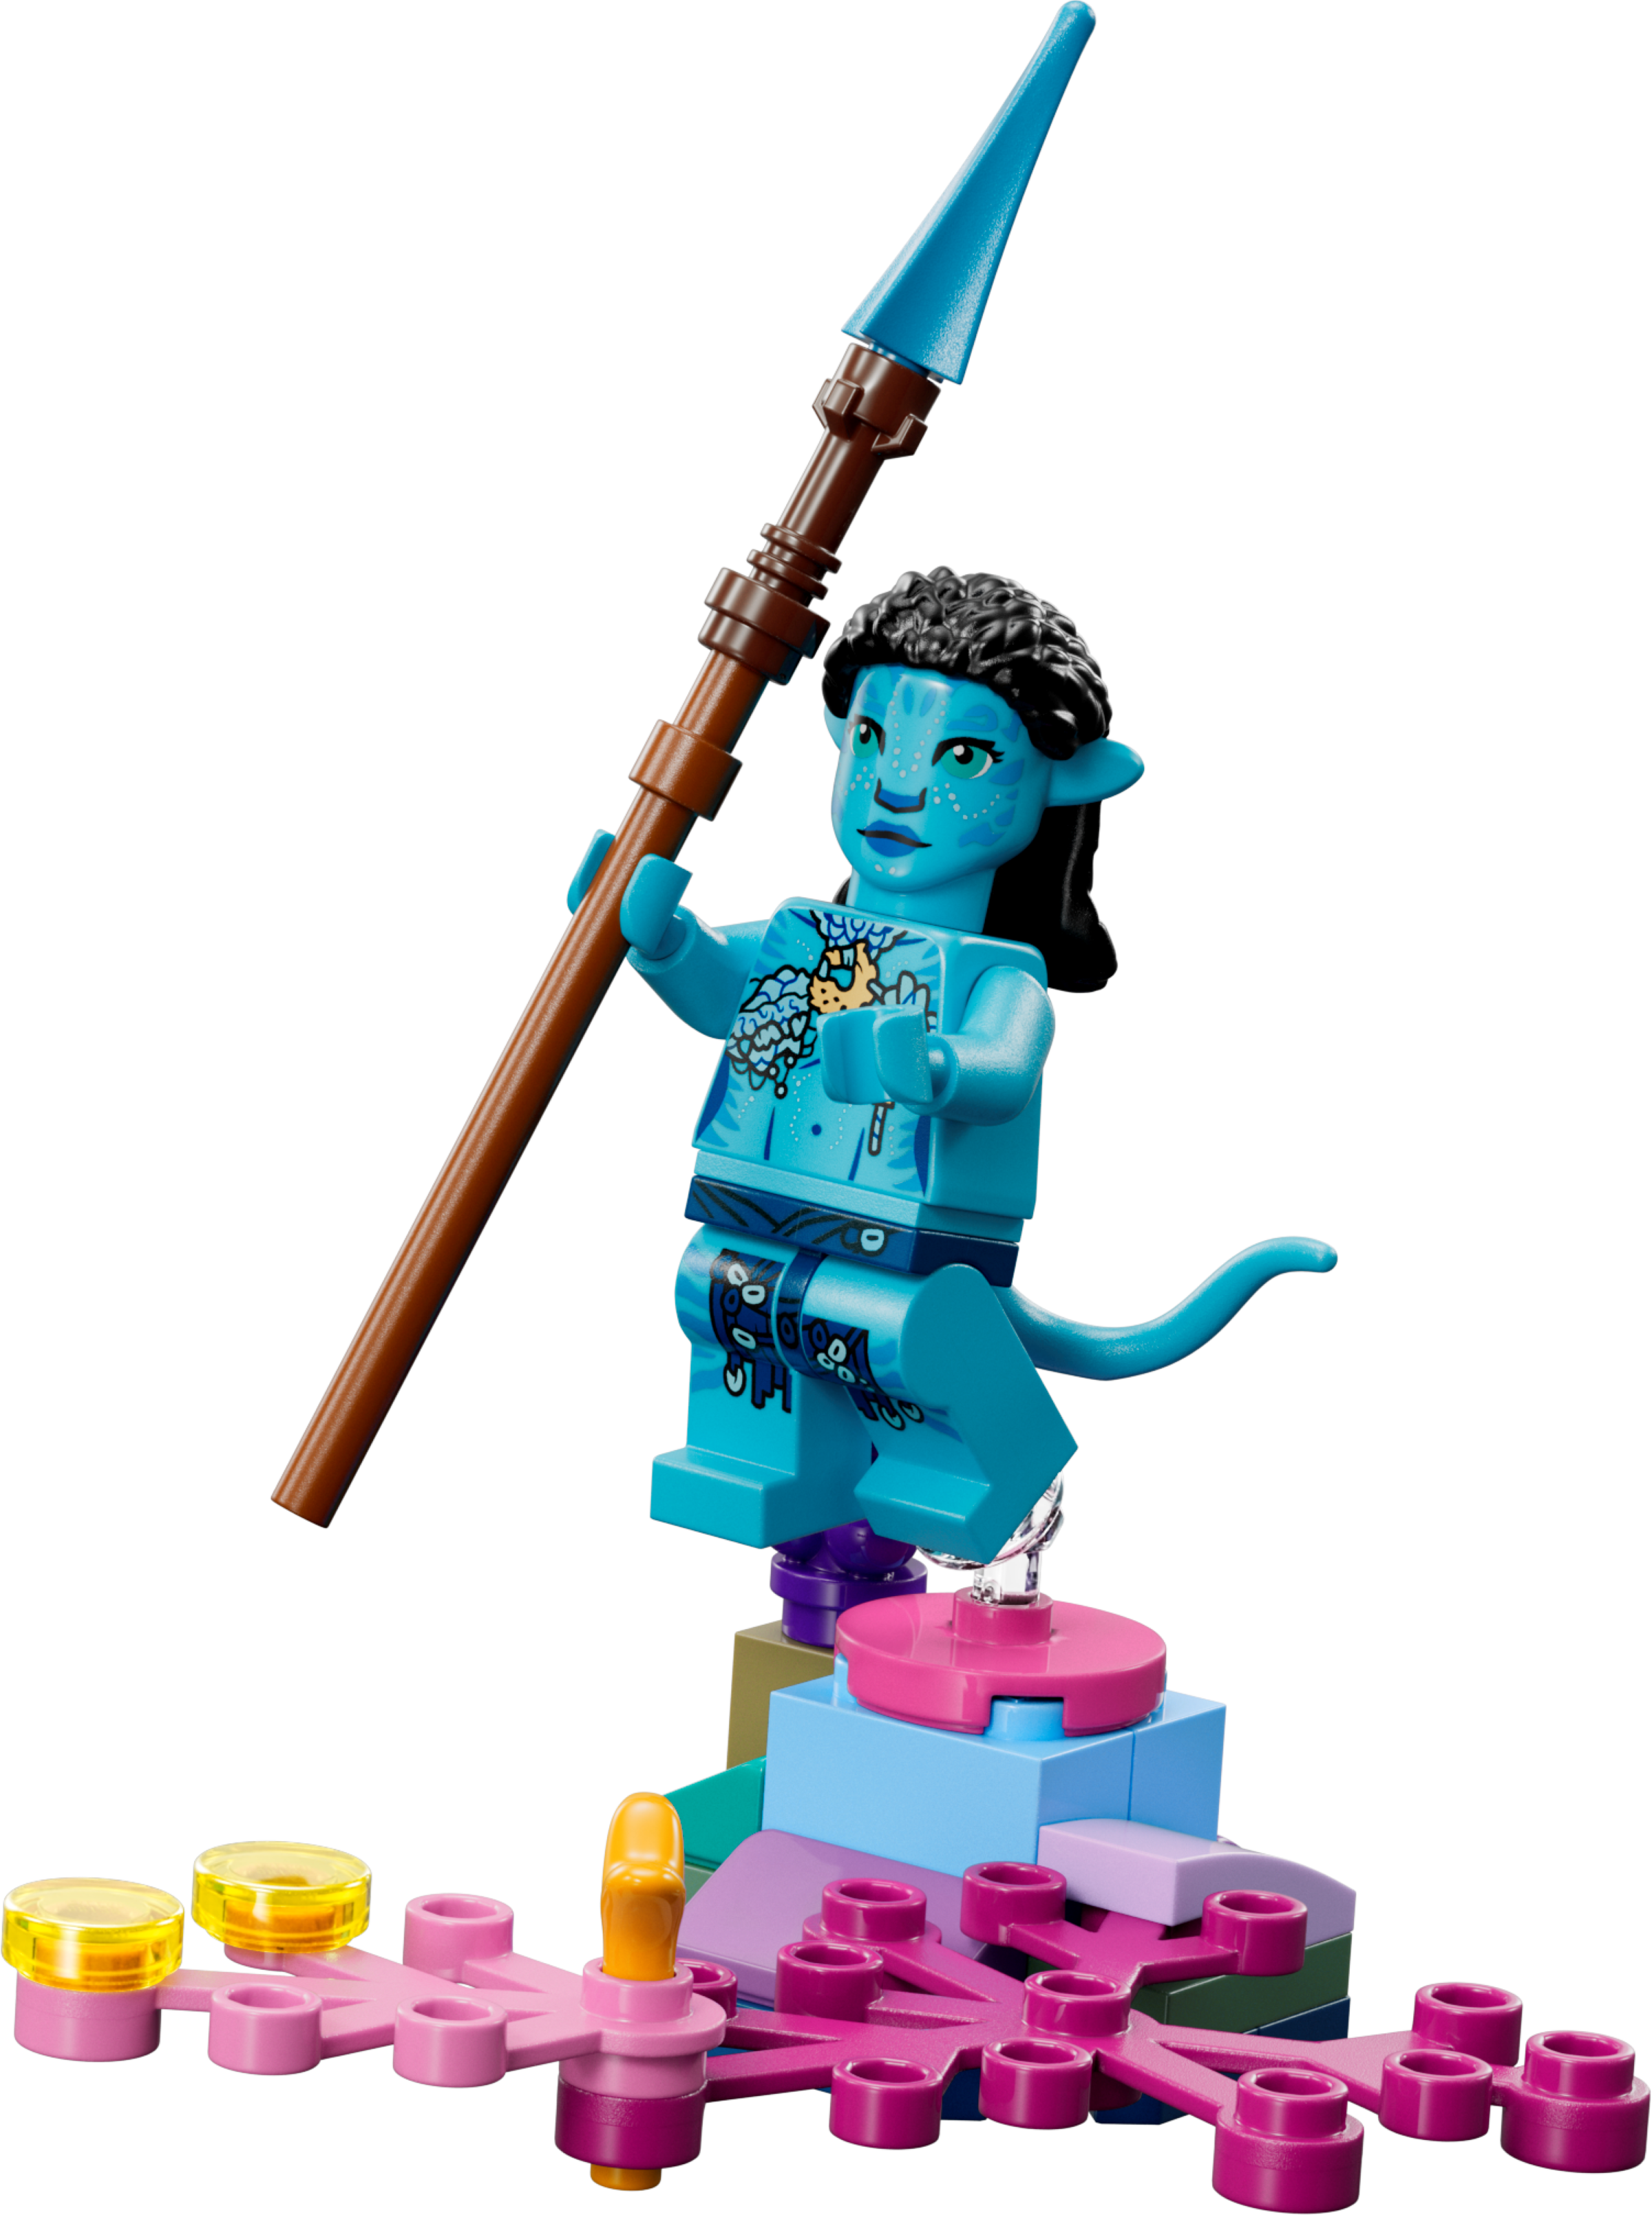 Il nuovo arco nei set LEGO Avatar sembra fare eco alle armi a fuoco rapido